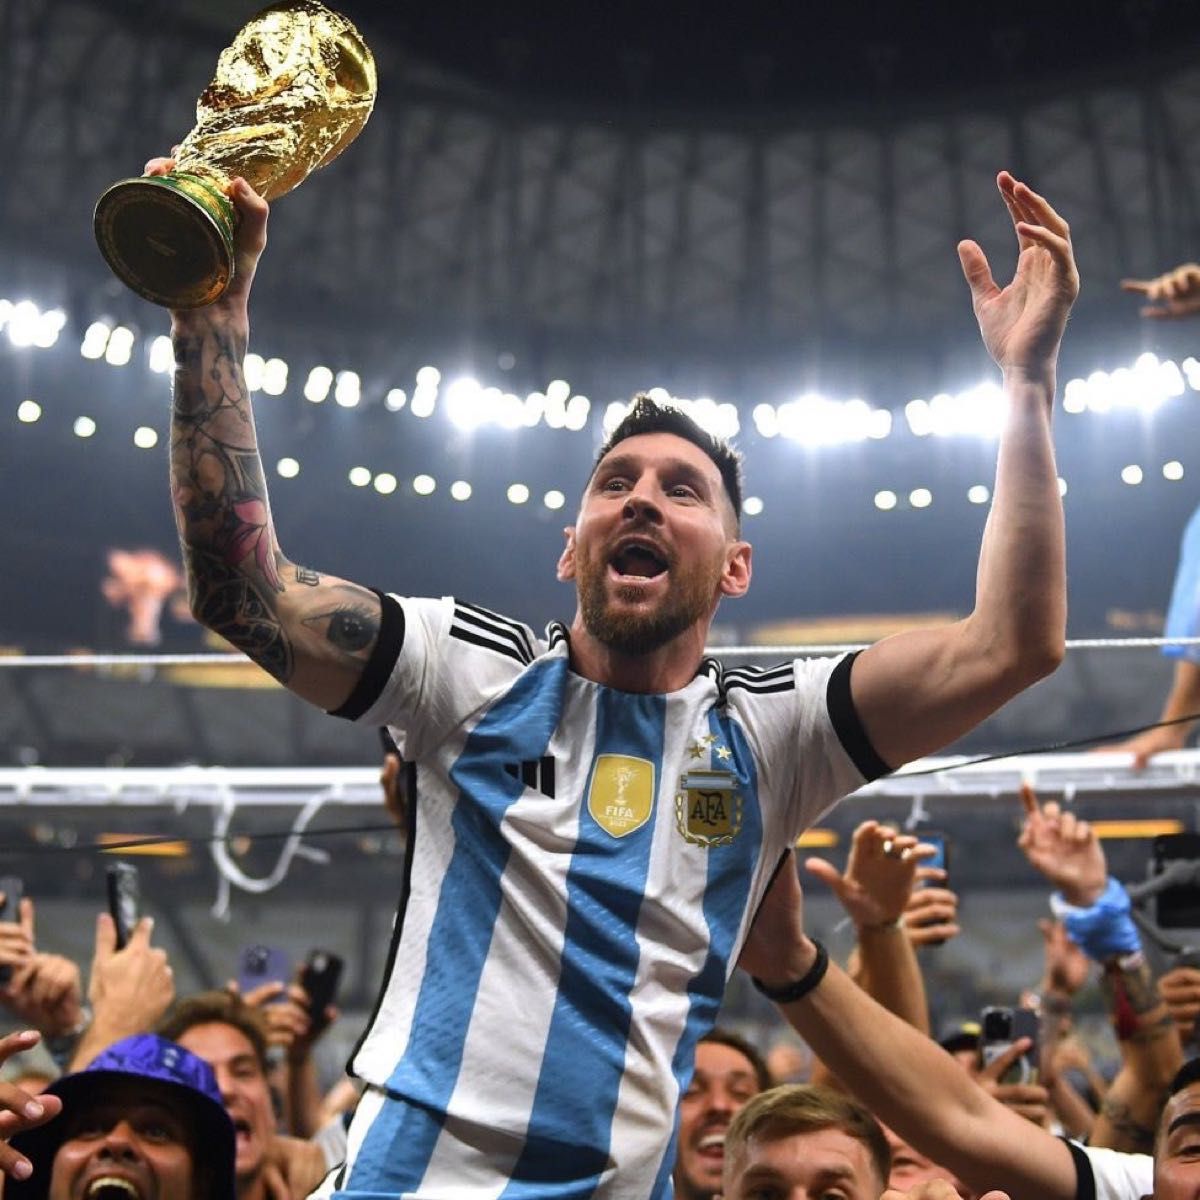 カタールワールドカップ2022 アルゼンチン代表優勝記念メッシ